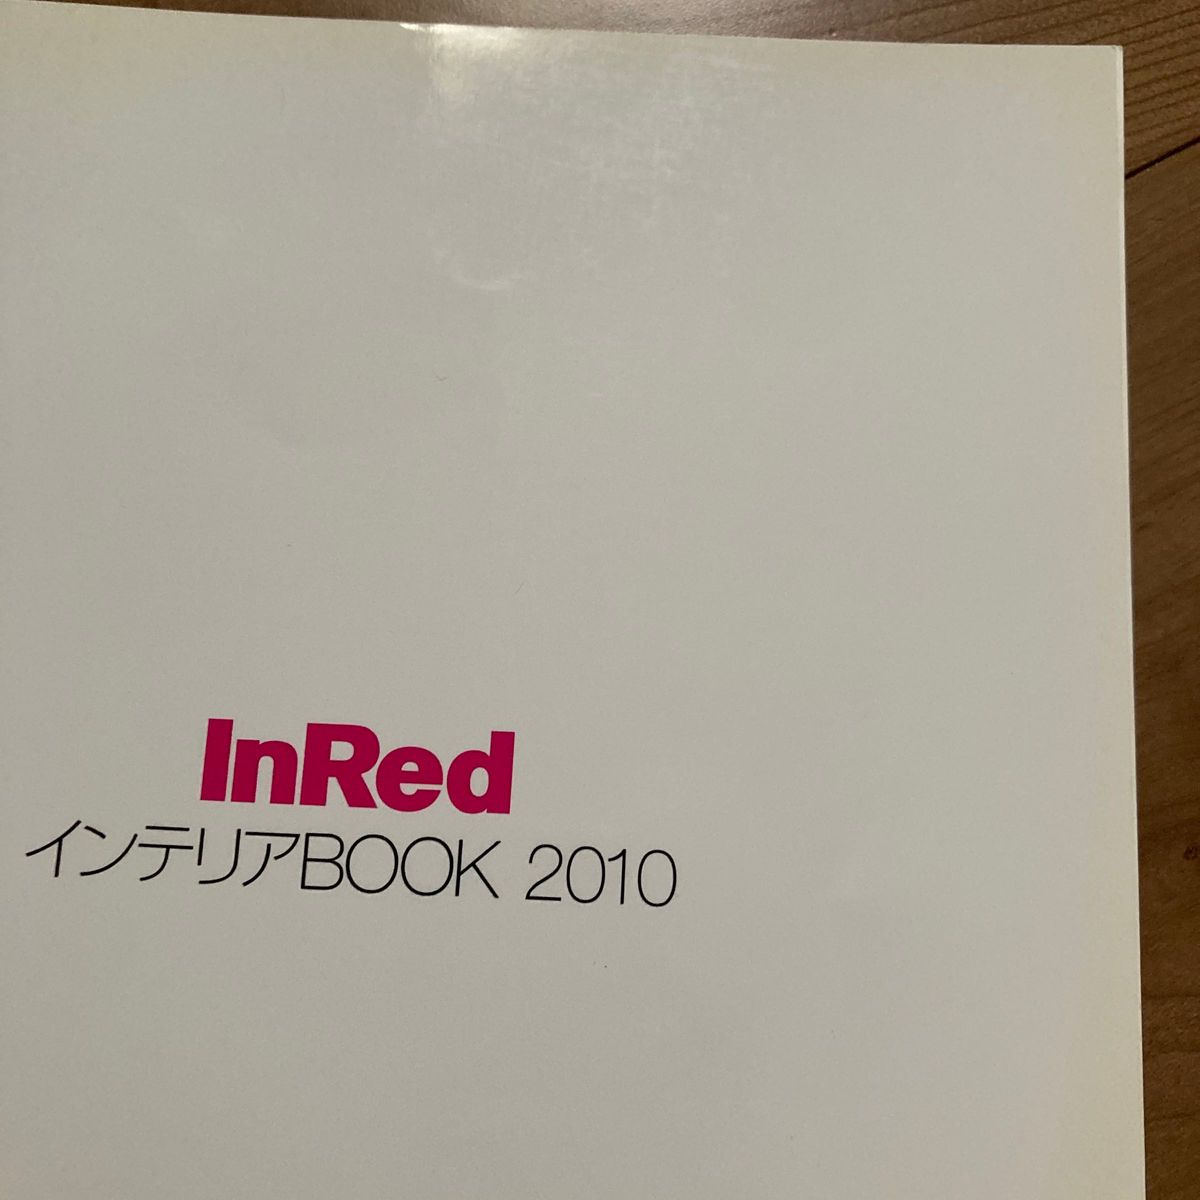 「InRedインテリアBOOK 2010 (プチ贅沢気分で癒される30代女子のお部屋づくり)